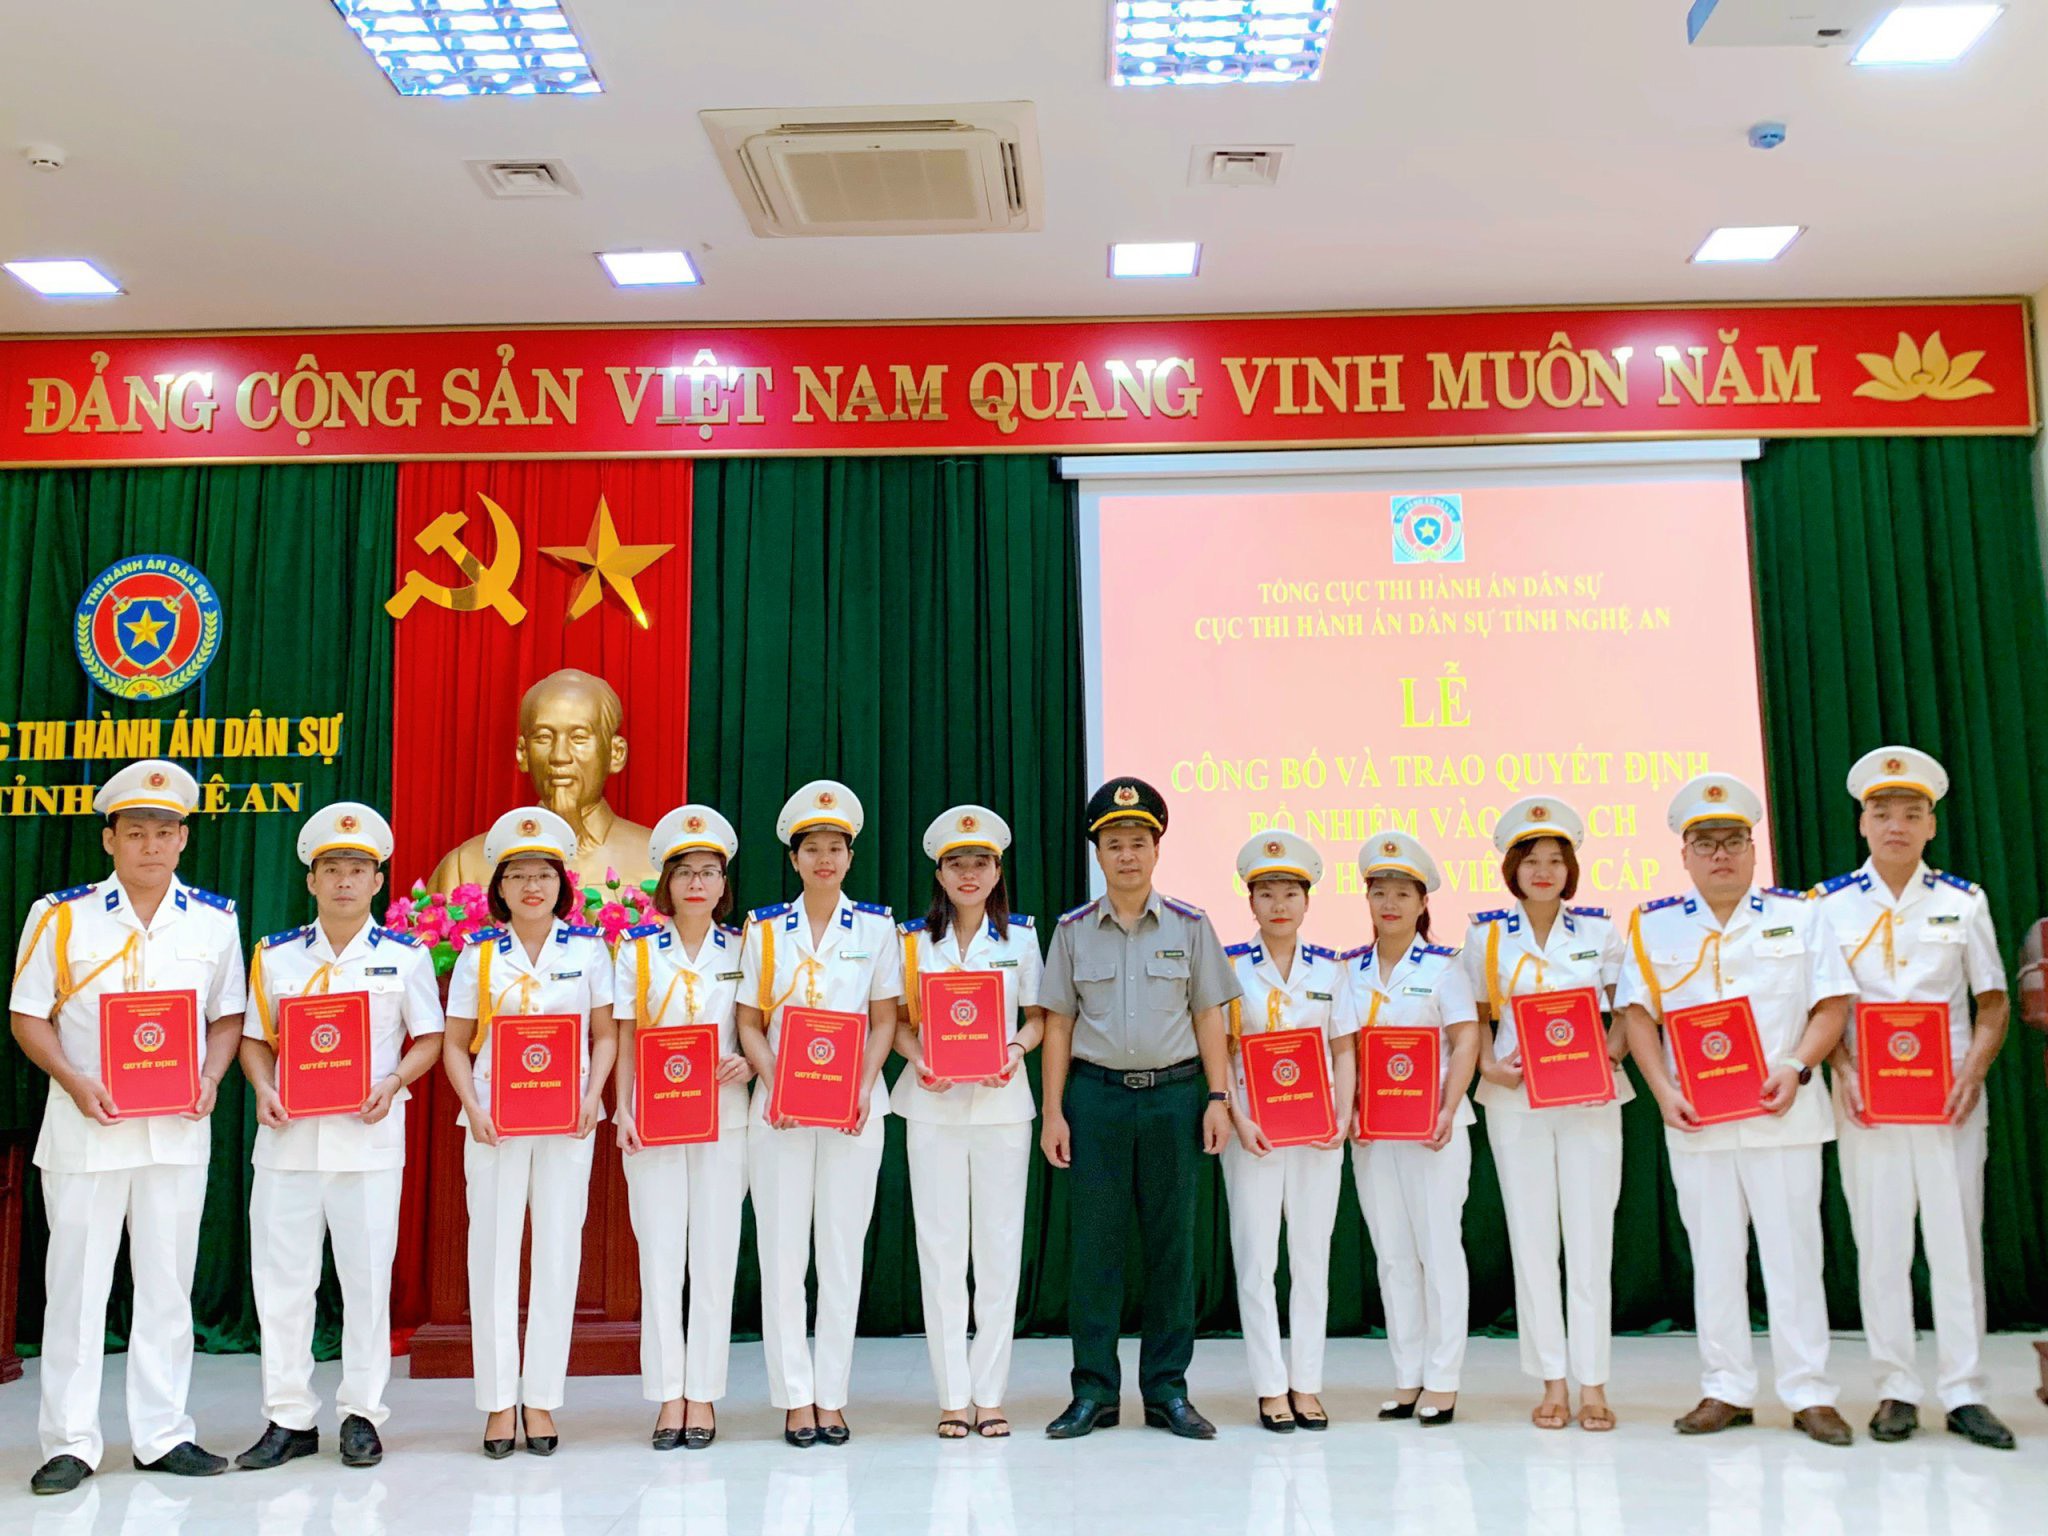 Cục Thi hành án dân sự tỉnh Nghệ An thừa ủy quyền của Bộ trưởng Bộ Tư pháp tổ chức Lễ công bố và trao Quyết định bổ nhiệm Chấp hành viên sơ cấp của Bộ trưởng Bộ Tư pháp  năm 2022.